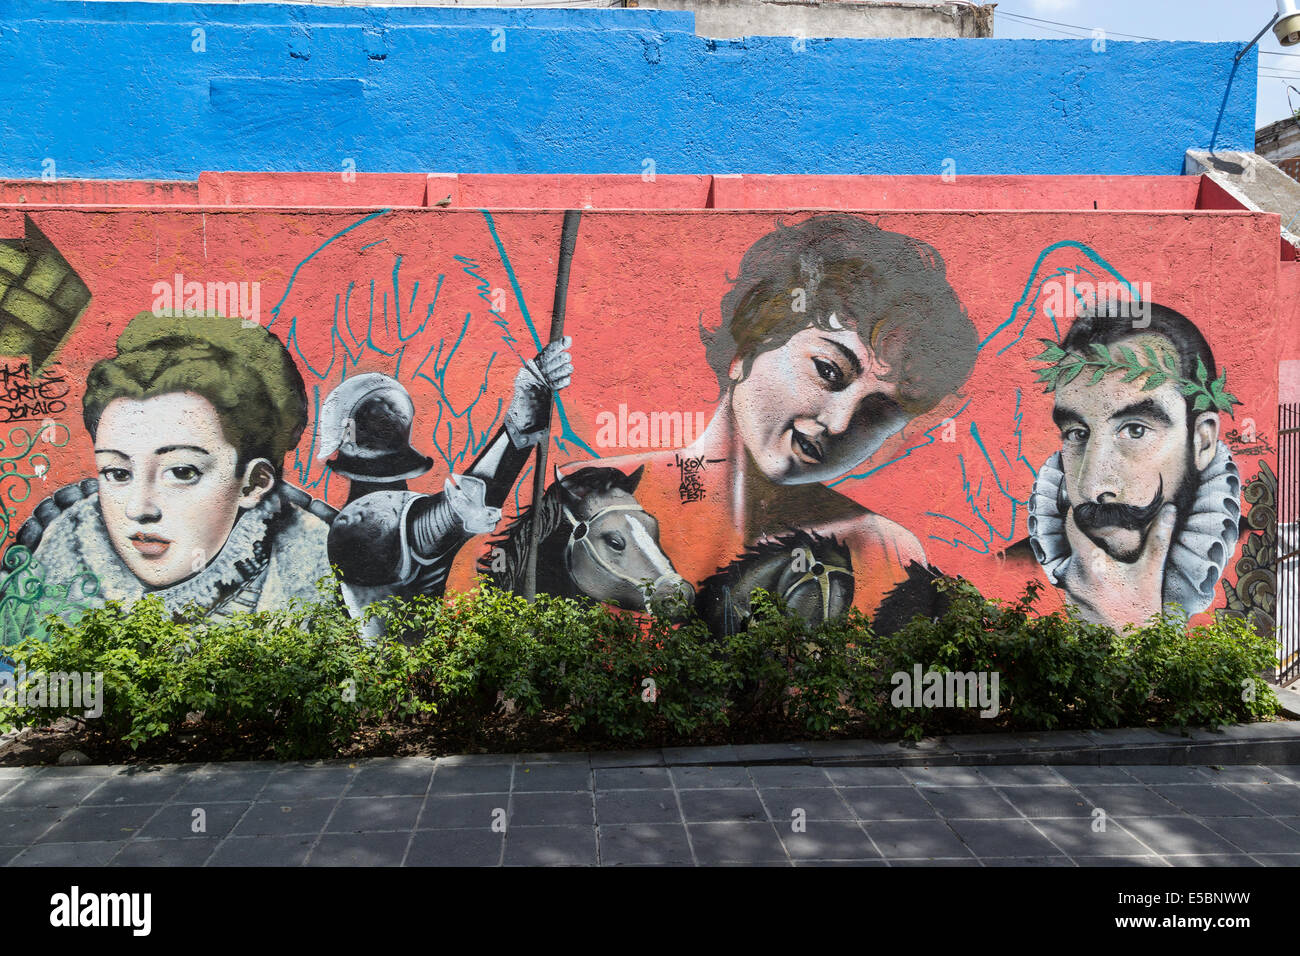 L'art urbain dans la ville coloniale espagnole de Puebla, Mexique Banque D'Images